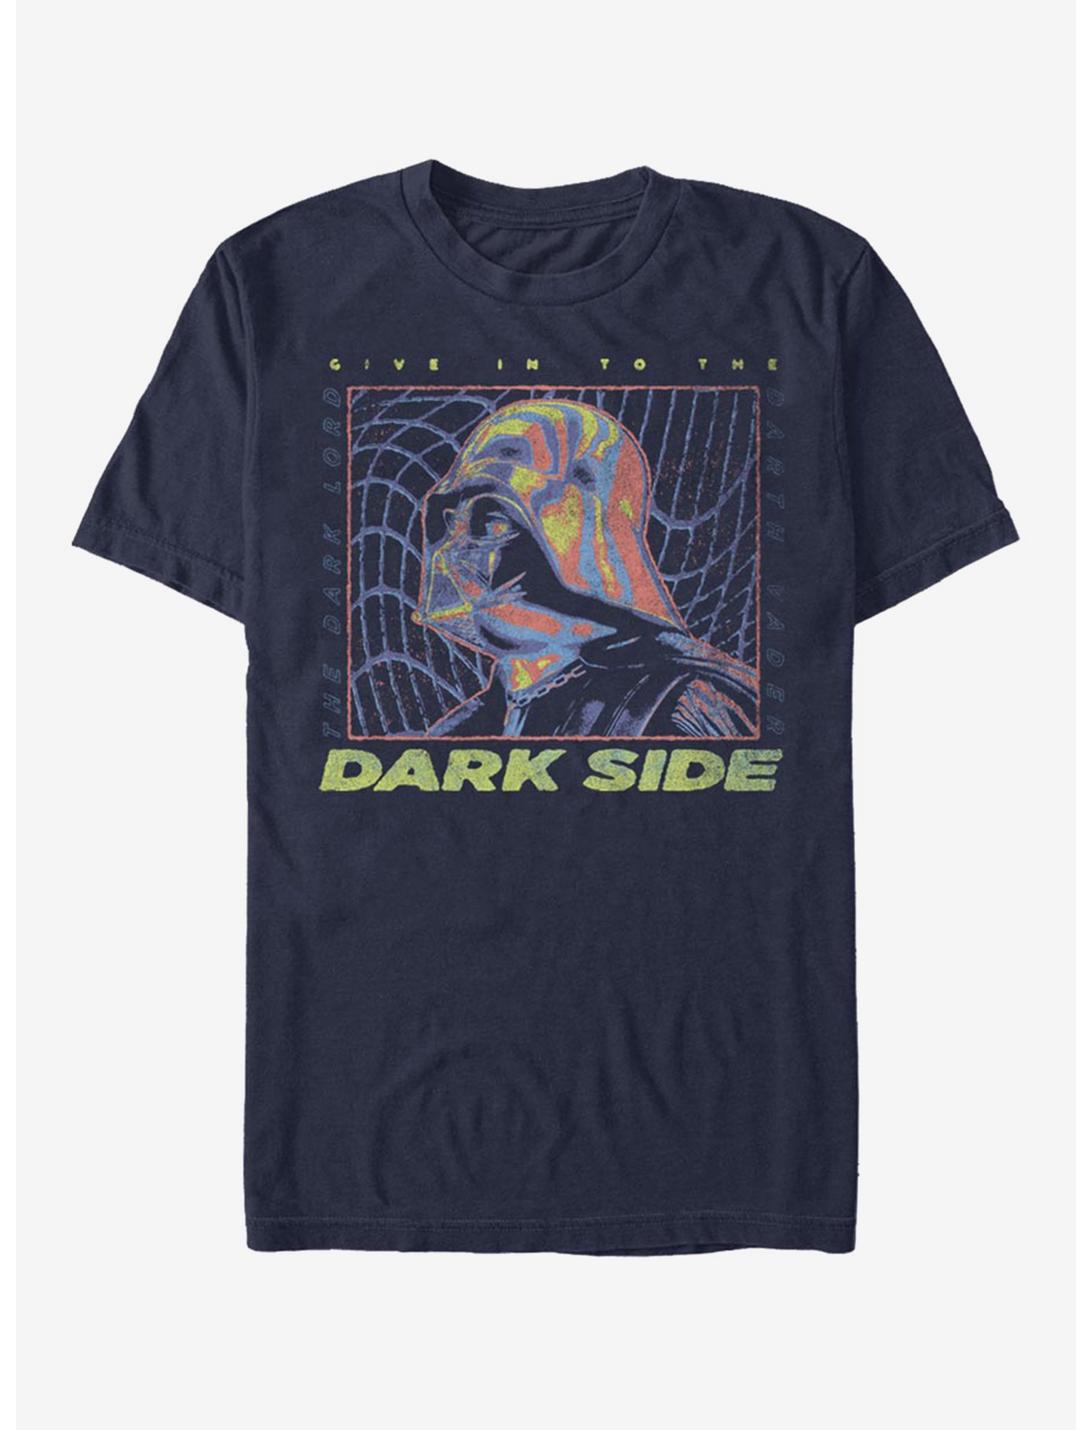 Star Wars Vader Thermal Warp T-Shirt, NAVY, hi-res